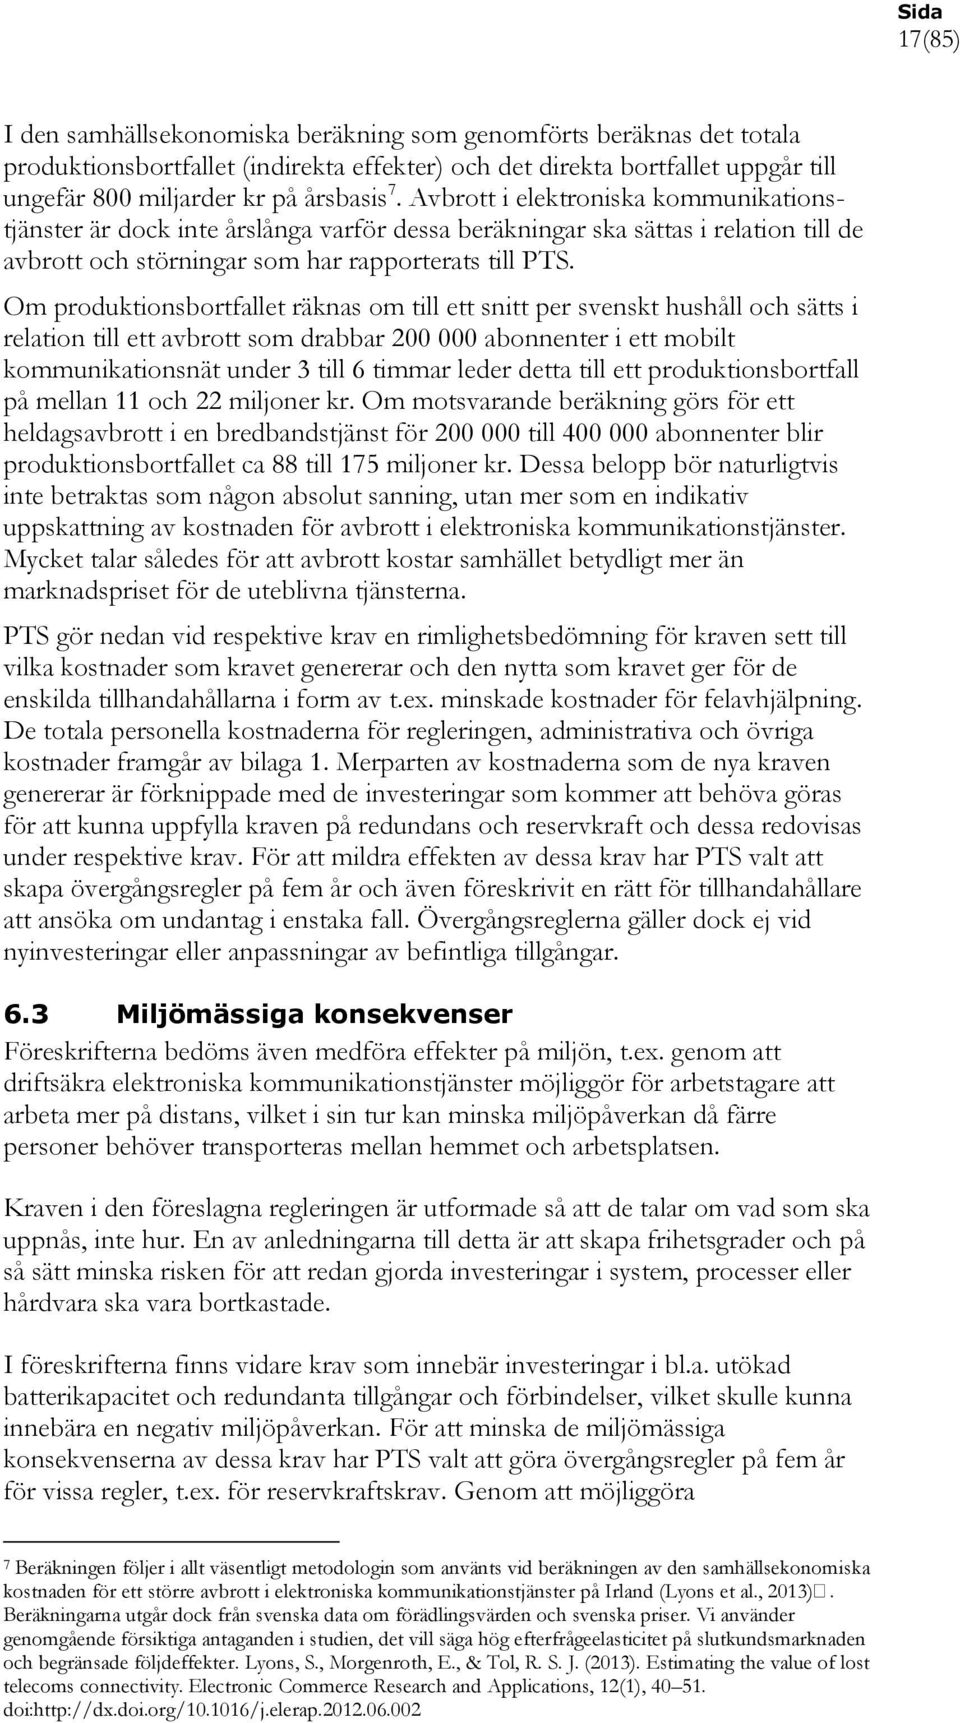 Om produktionsbortfallet räknas om till ett snitt per svenskt hushåll och sätts i relation till ett avbrott som drabbar 200 000 abonnenter i ett mobilt kommunikationsnät under 3 till 6 timmar leder